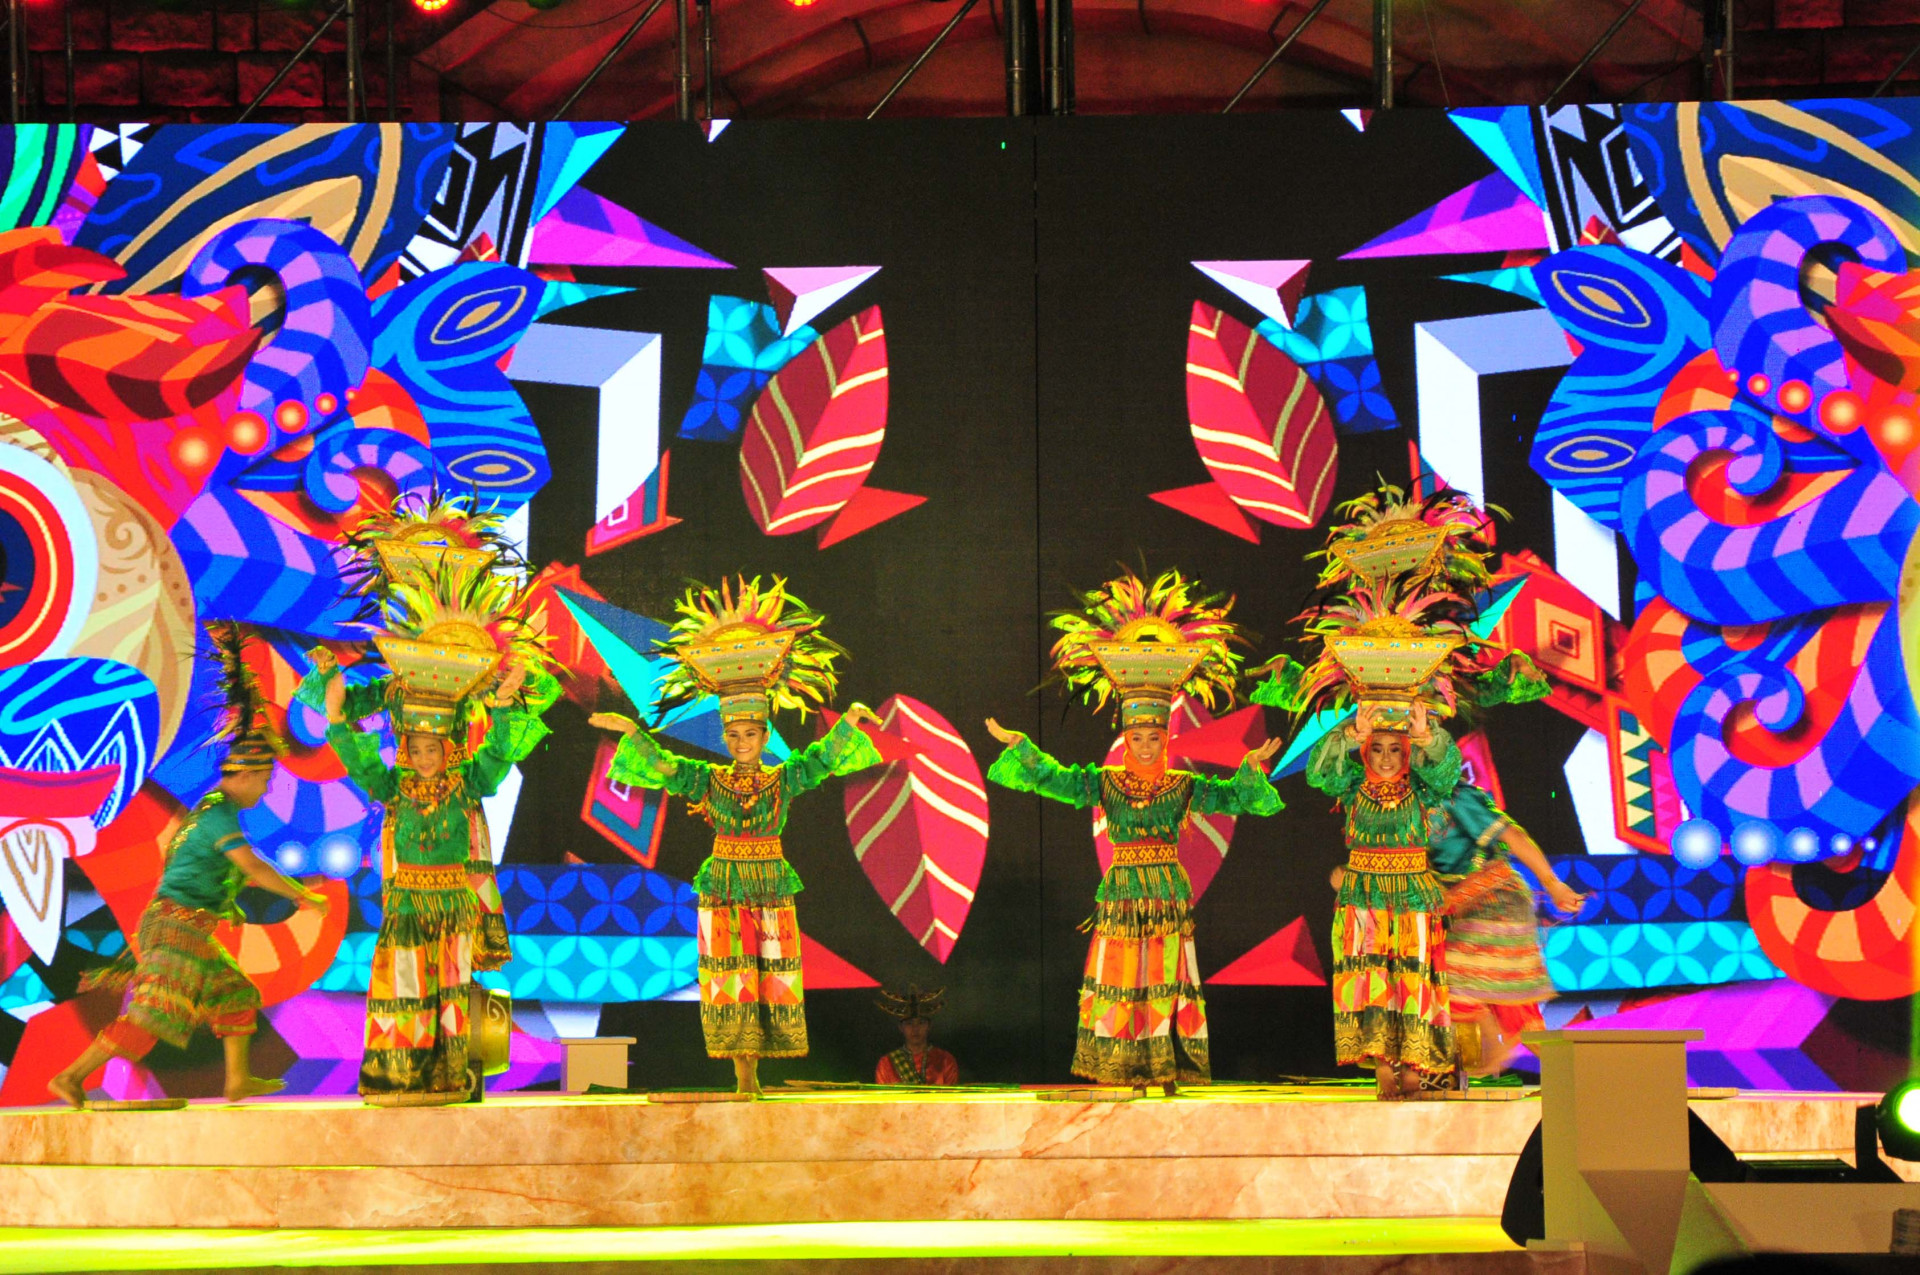 Tiết mục múa Piya Toraya của các em nhỏ đến từ Indonesia. Điệu múa mô tả vẻ đẹp của vùng đất Toraja, nơi có nhiều cây xanh, biểu trưng cho sự thuận hoà của vùng đất và con người nơi đây 